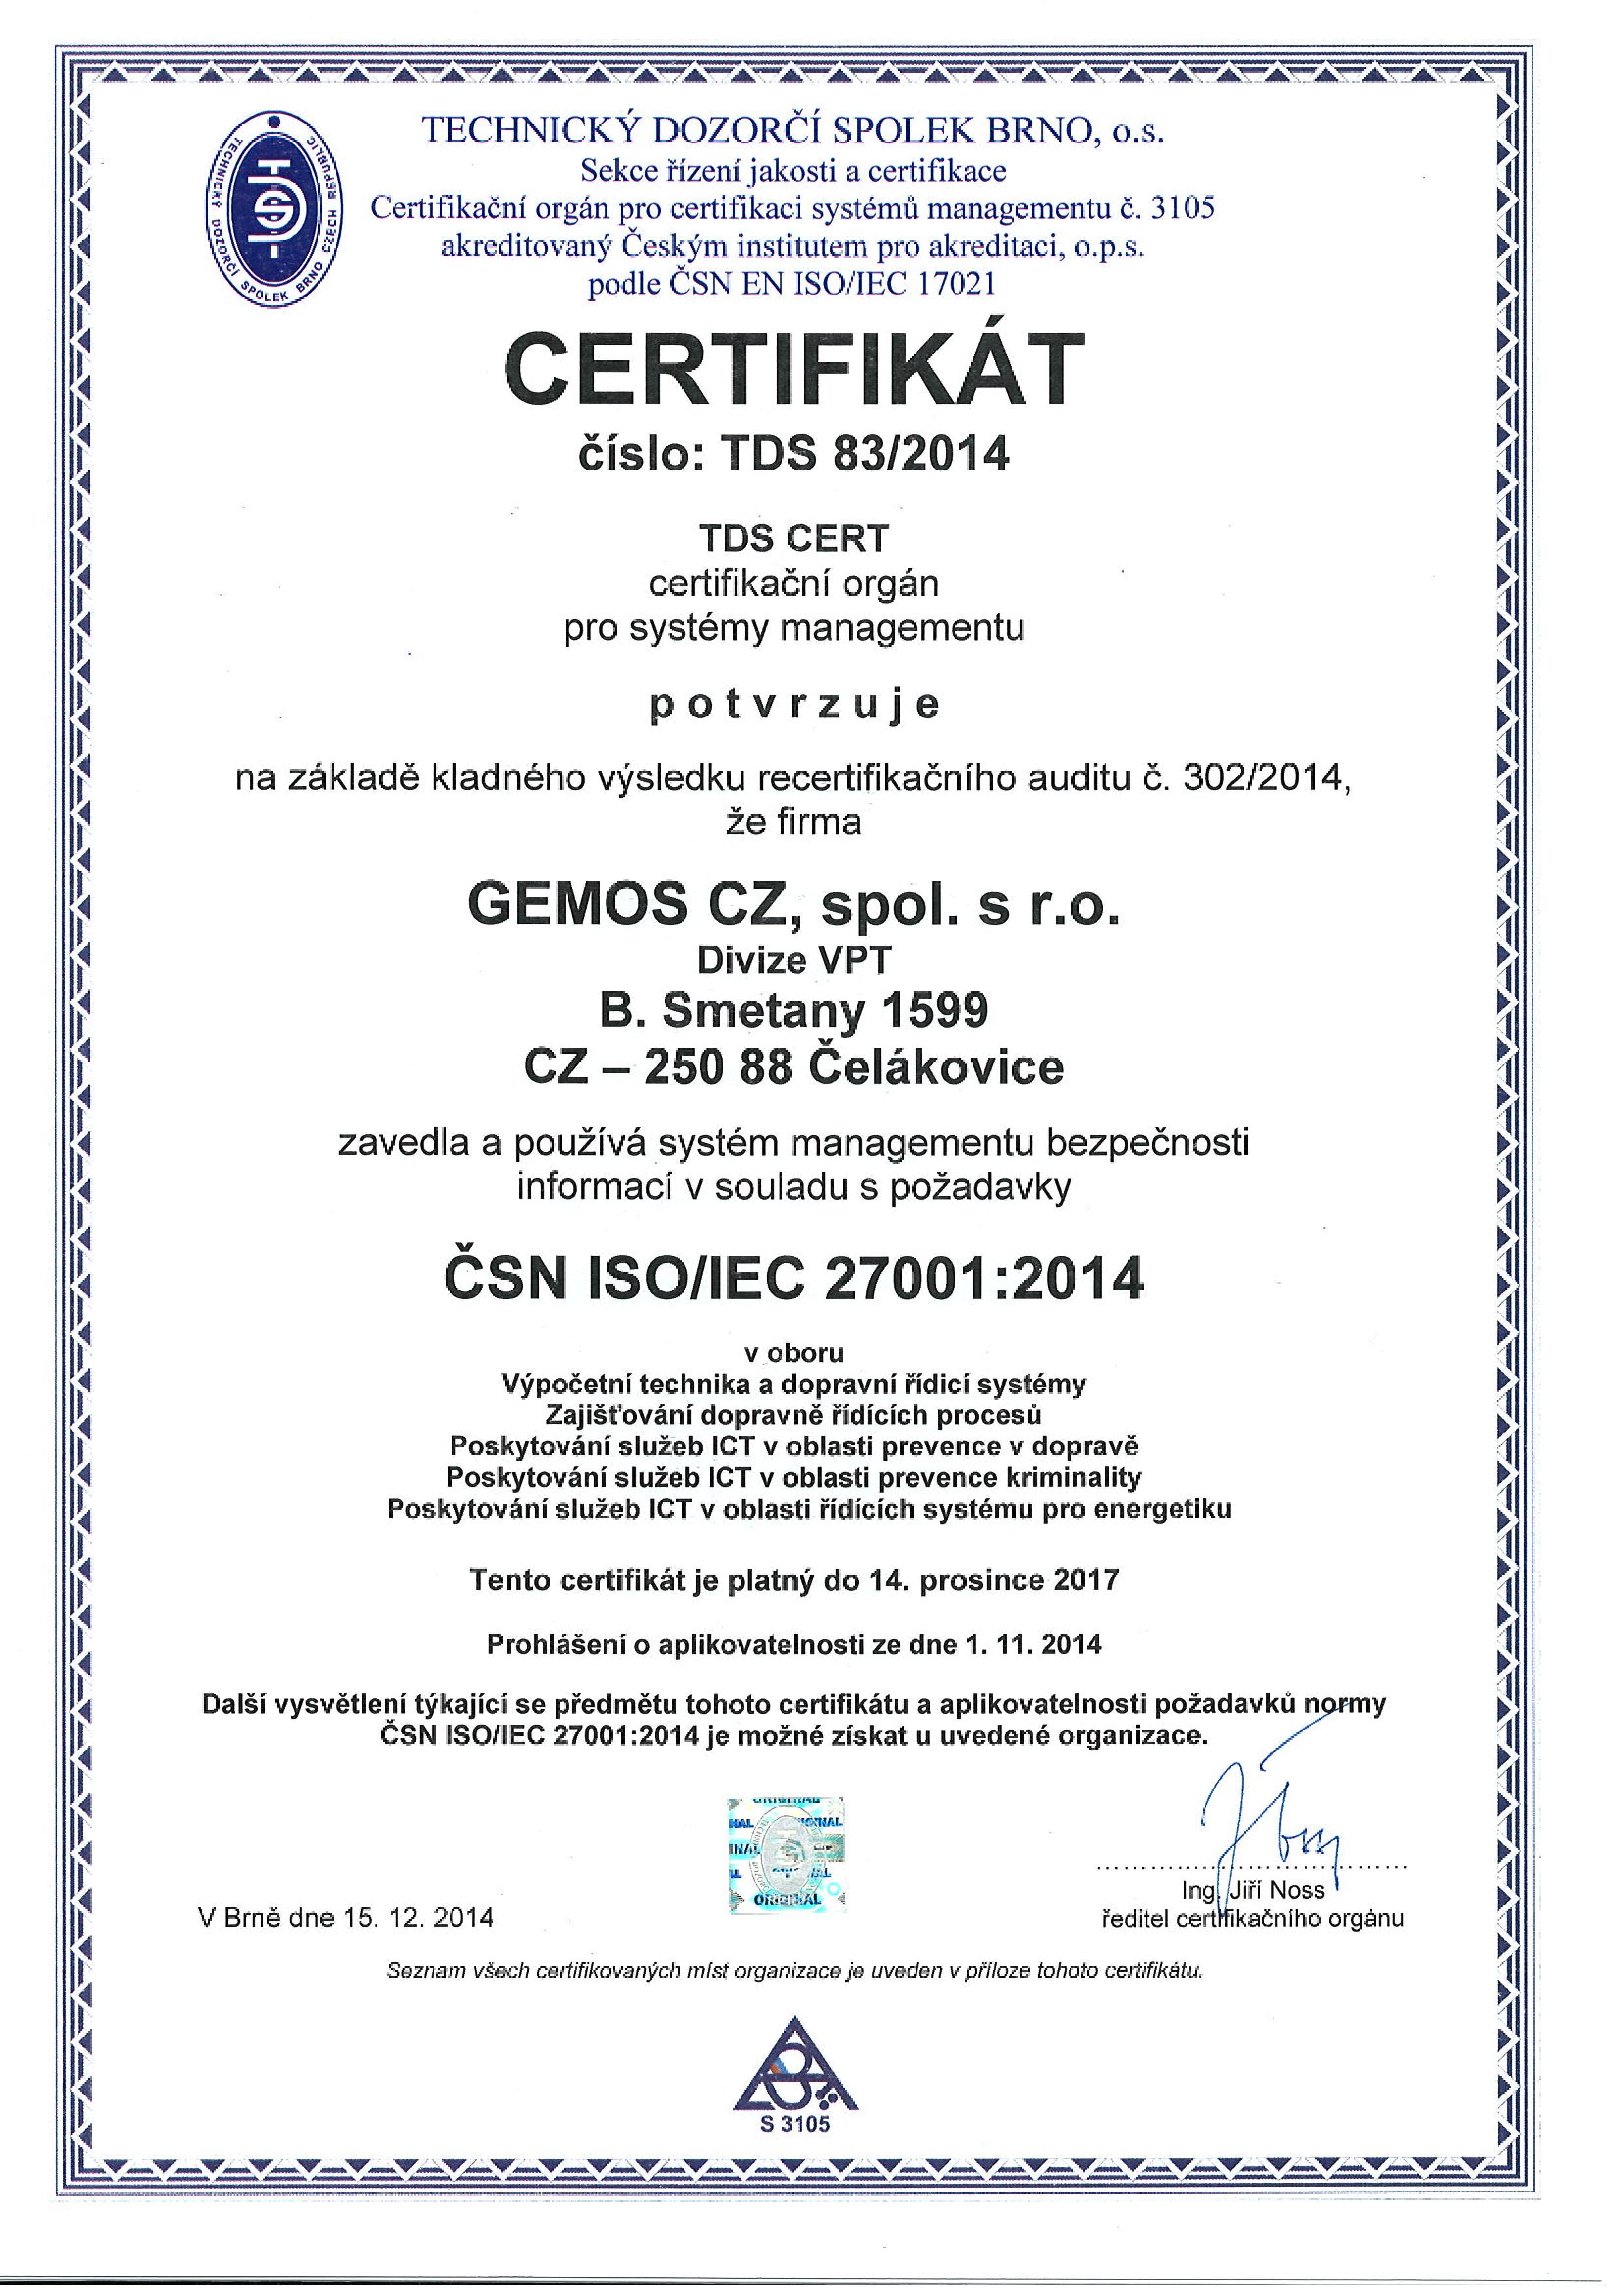 Certifikát ČSN ISO/IEC 27001 udělený společnosti Gemos